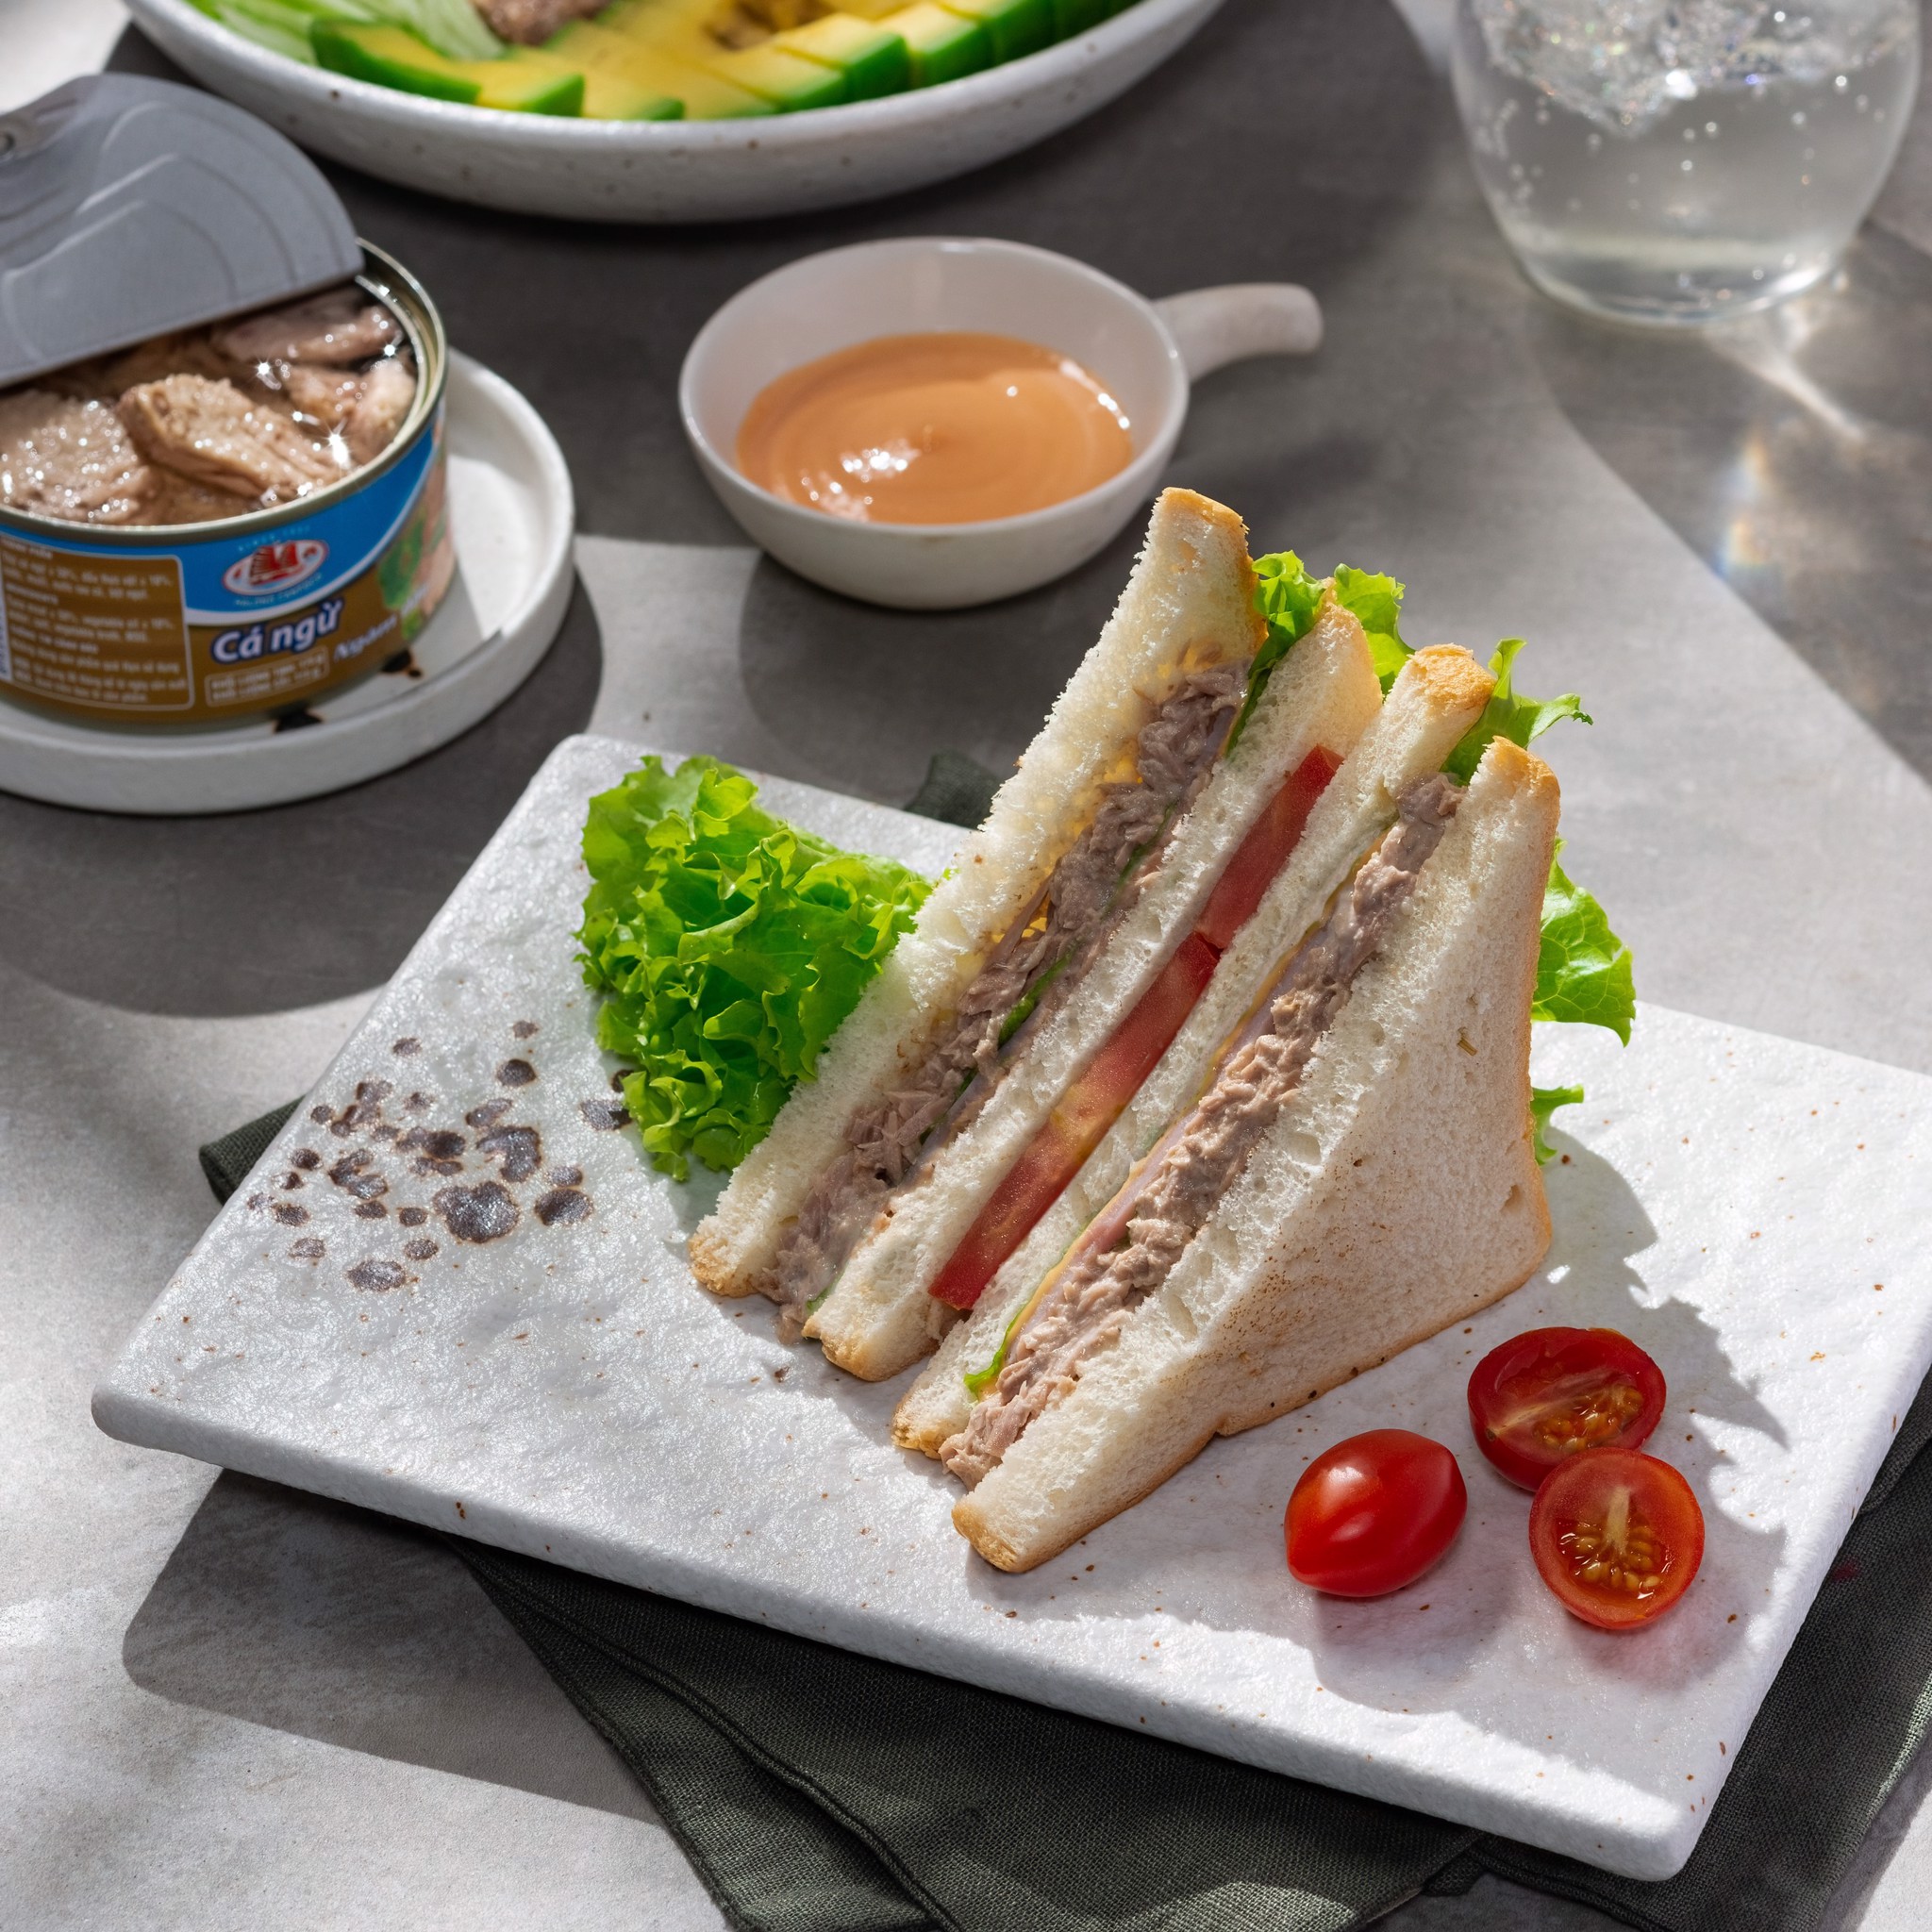 Halong Canfoco Tuna sandwich